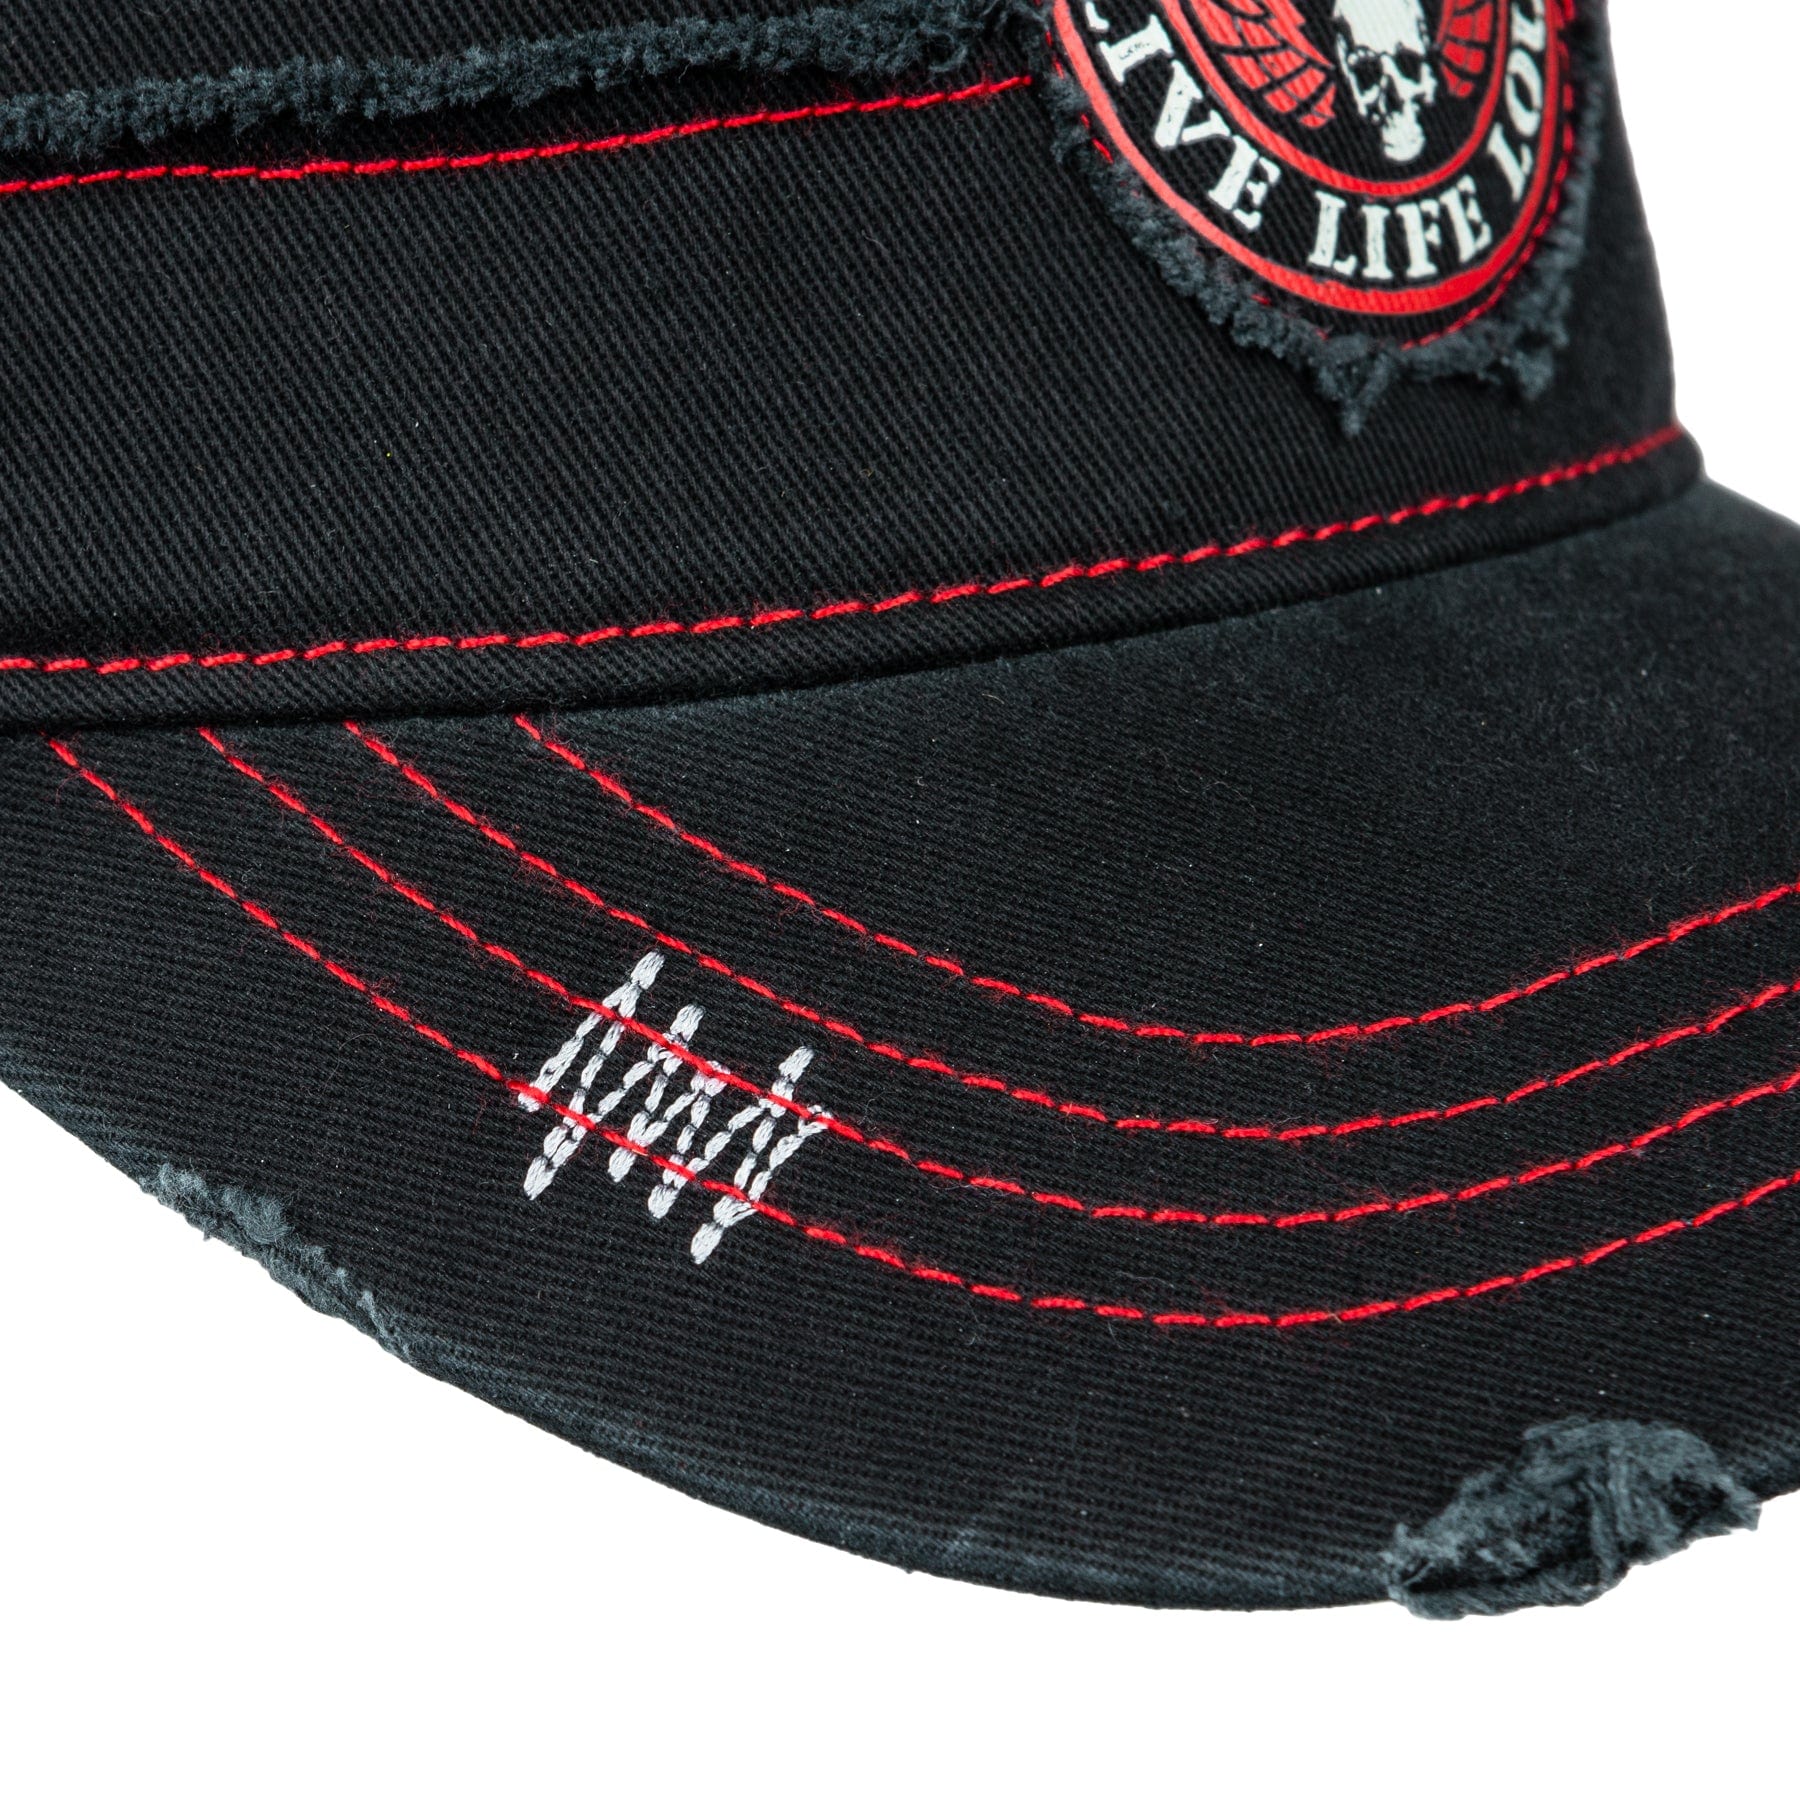 Wornstar Clothing Hat Bloodline Cadet Hat